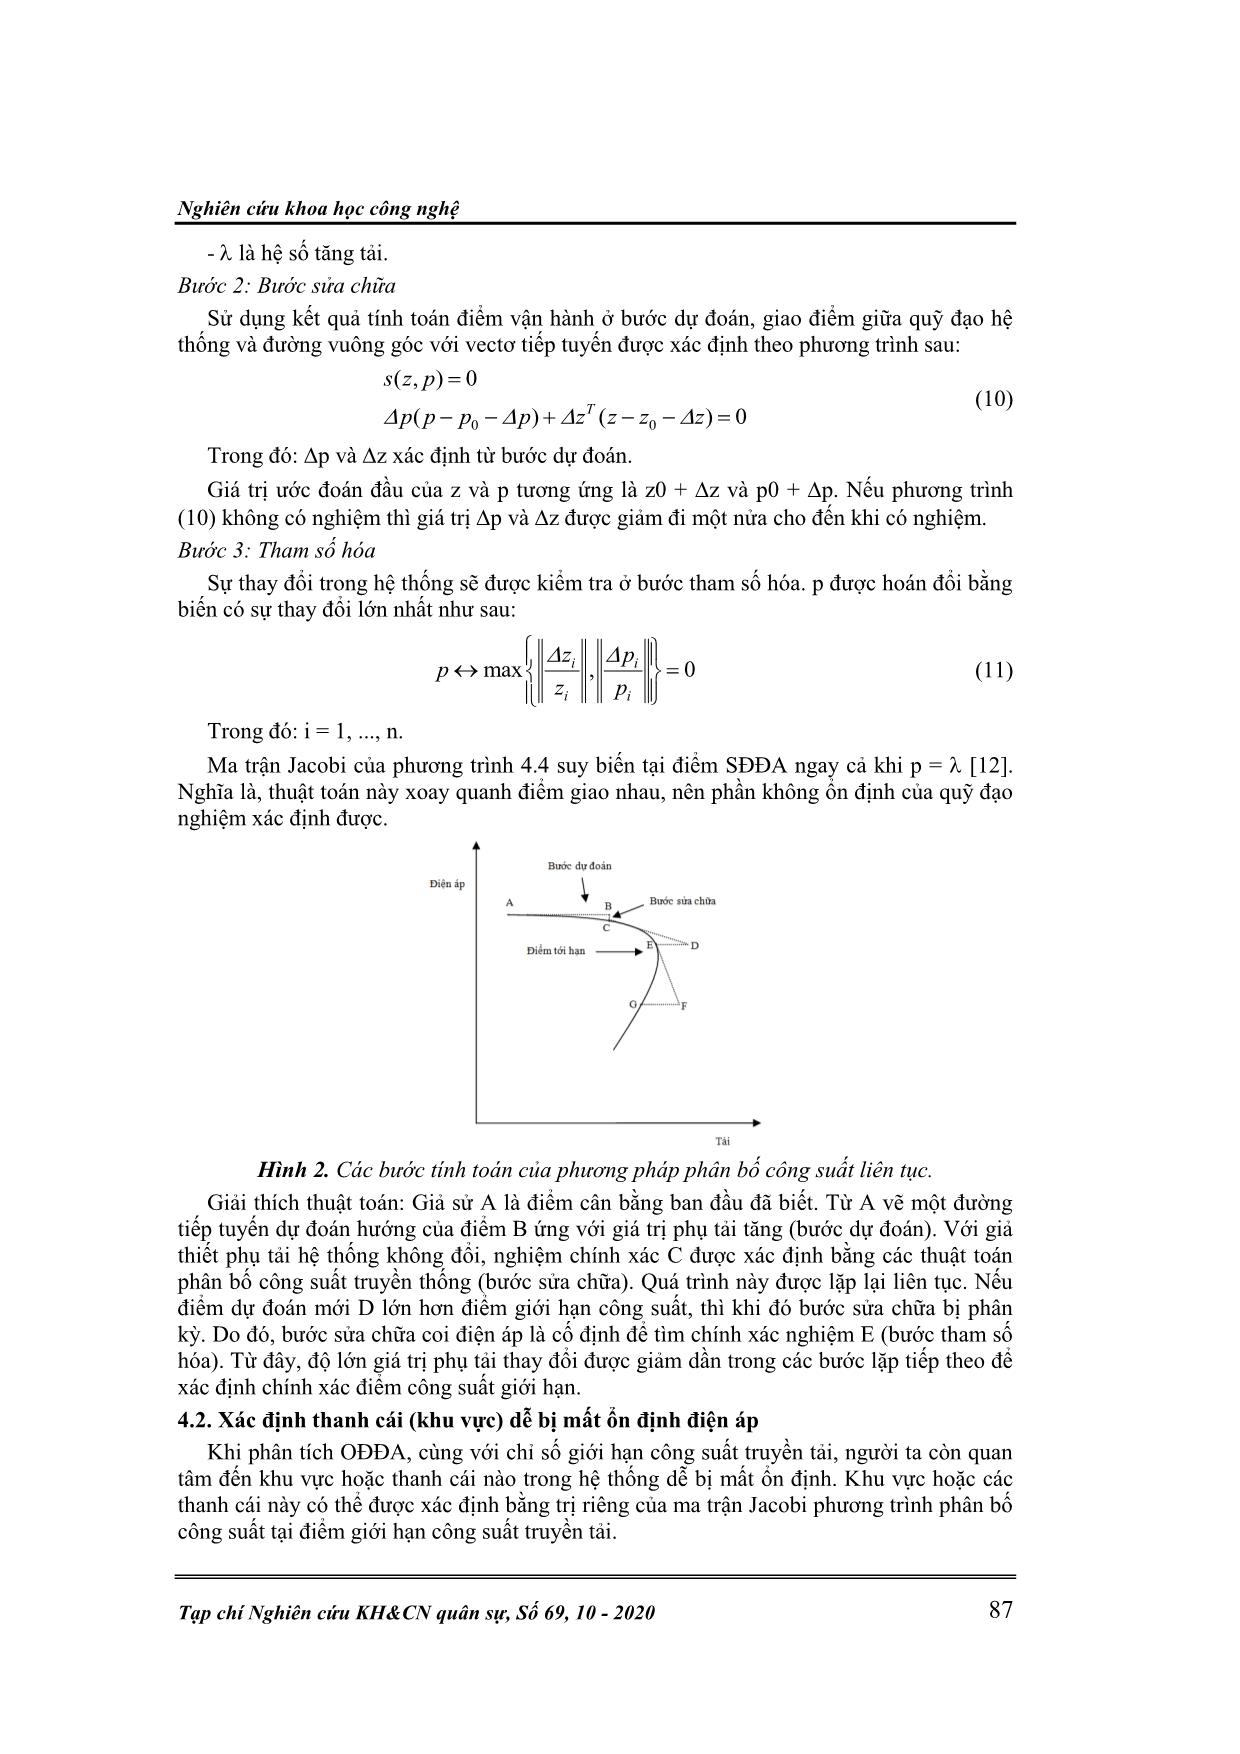 Ứng dụng lý thuyết giao nhau điểm yên ngựa xác định vị trí đặt svc nhằm nâng cao ổn định điện áp trang 6